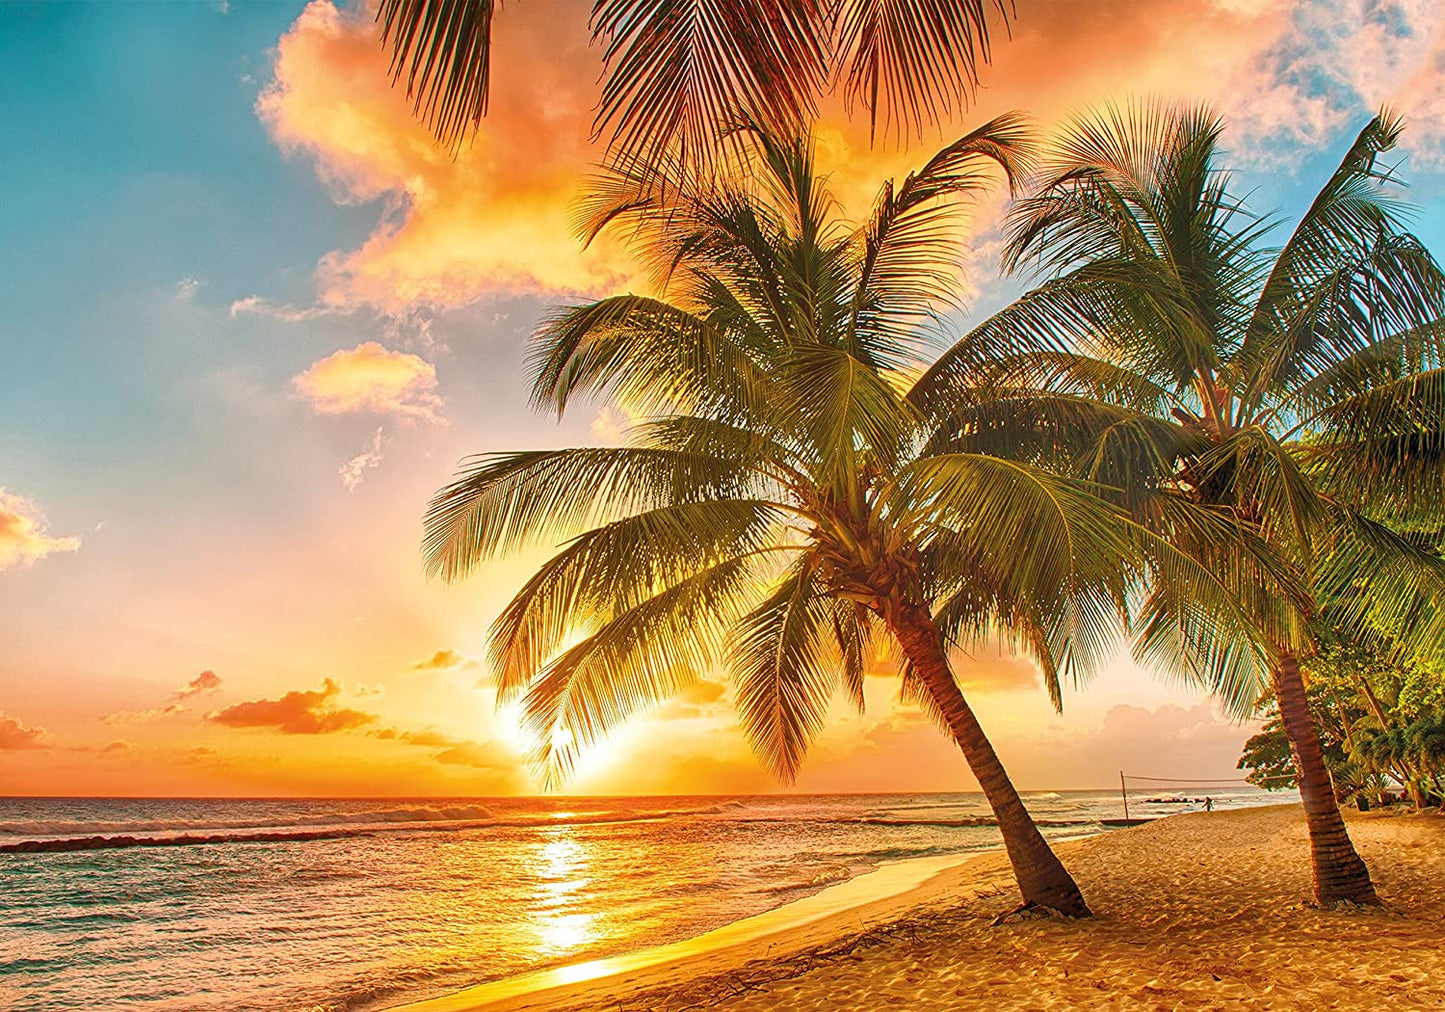 PICSonPAPER Poster Traumstrand Barbados, 100 cm breit x 70 cm hoch, Dekoration, Kunstdruck, Wandbild, Fineartprint, Strand, Sommer, Karibik, Sonnenuntergang, Premium Qualität